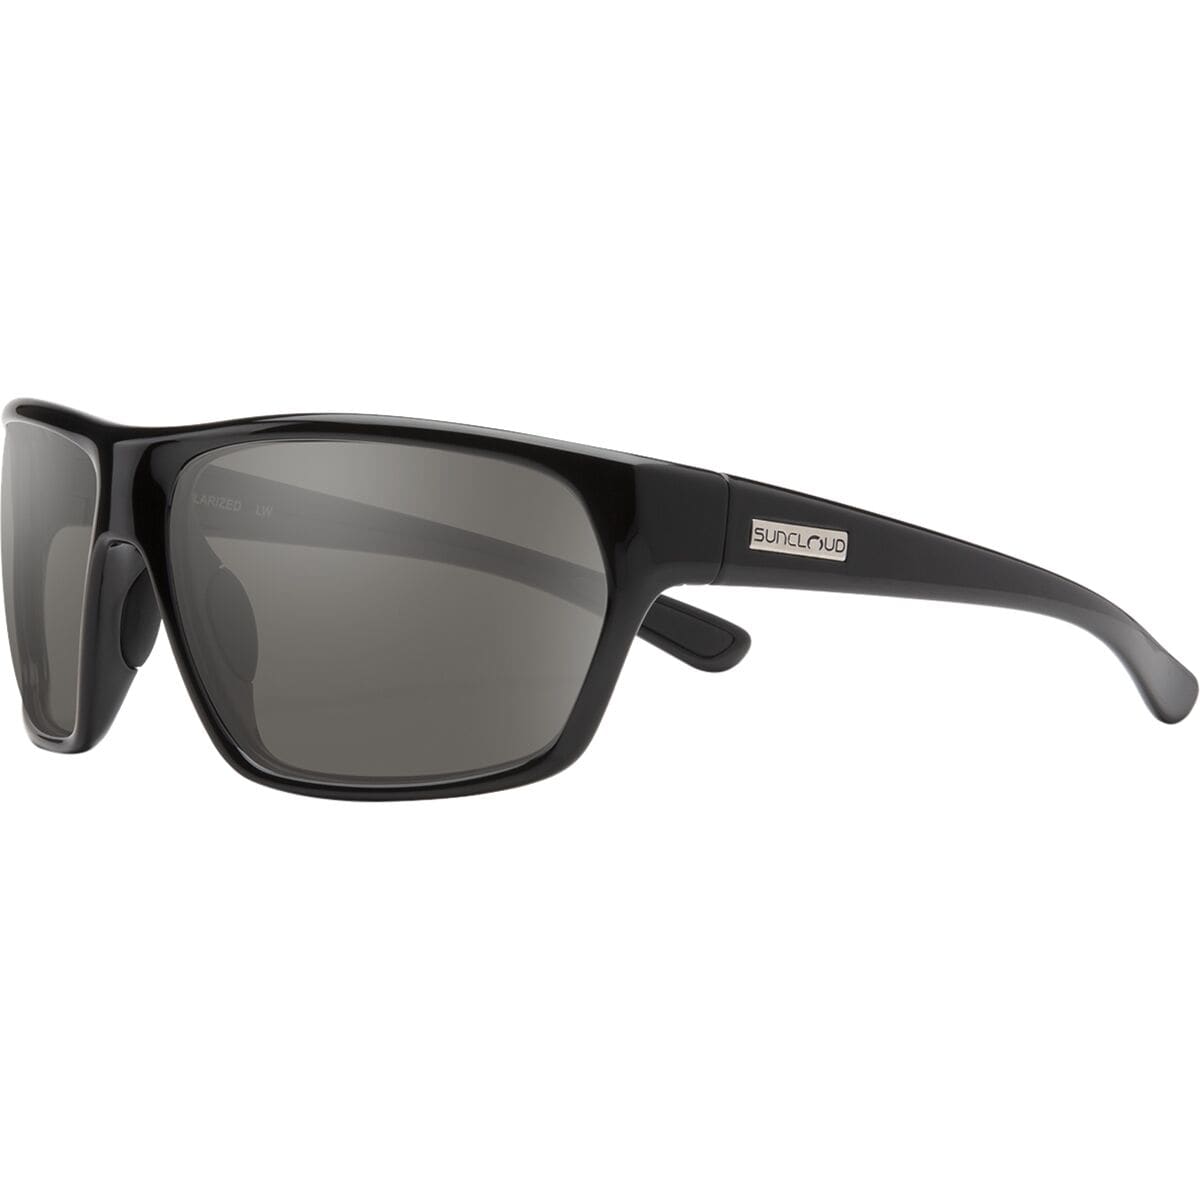 Поляризованные солнцезащитные очки boone Suncloud Polarized Optics, цвет black/polar grey